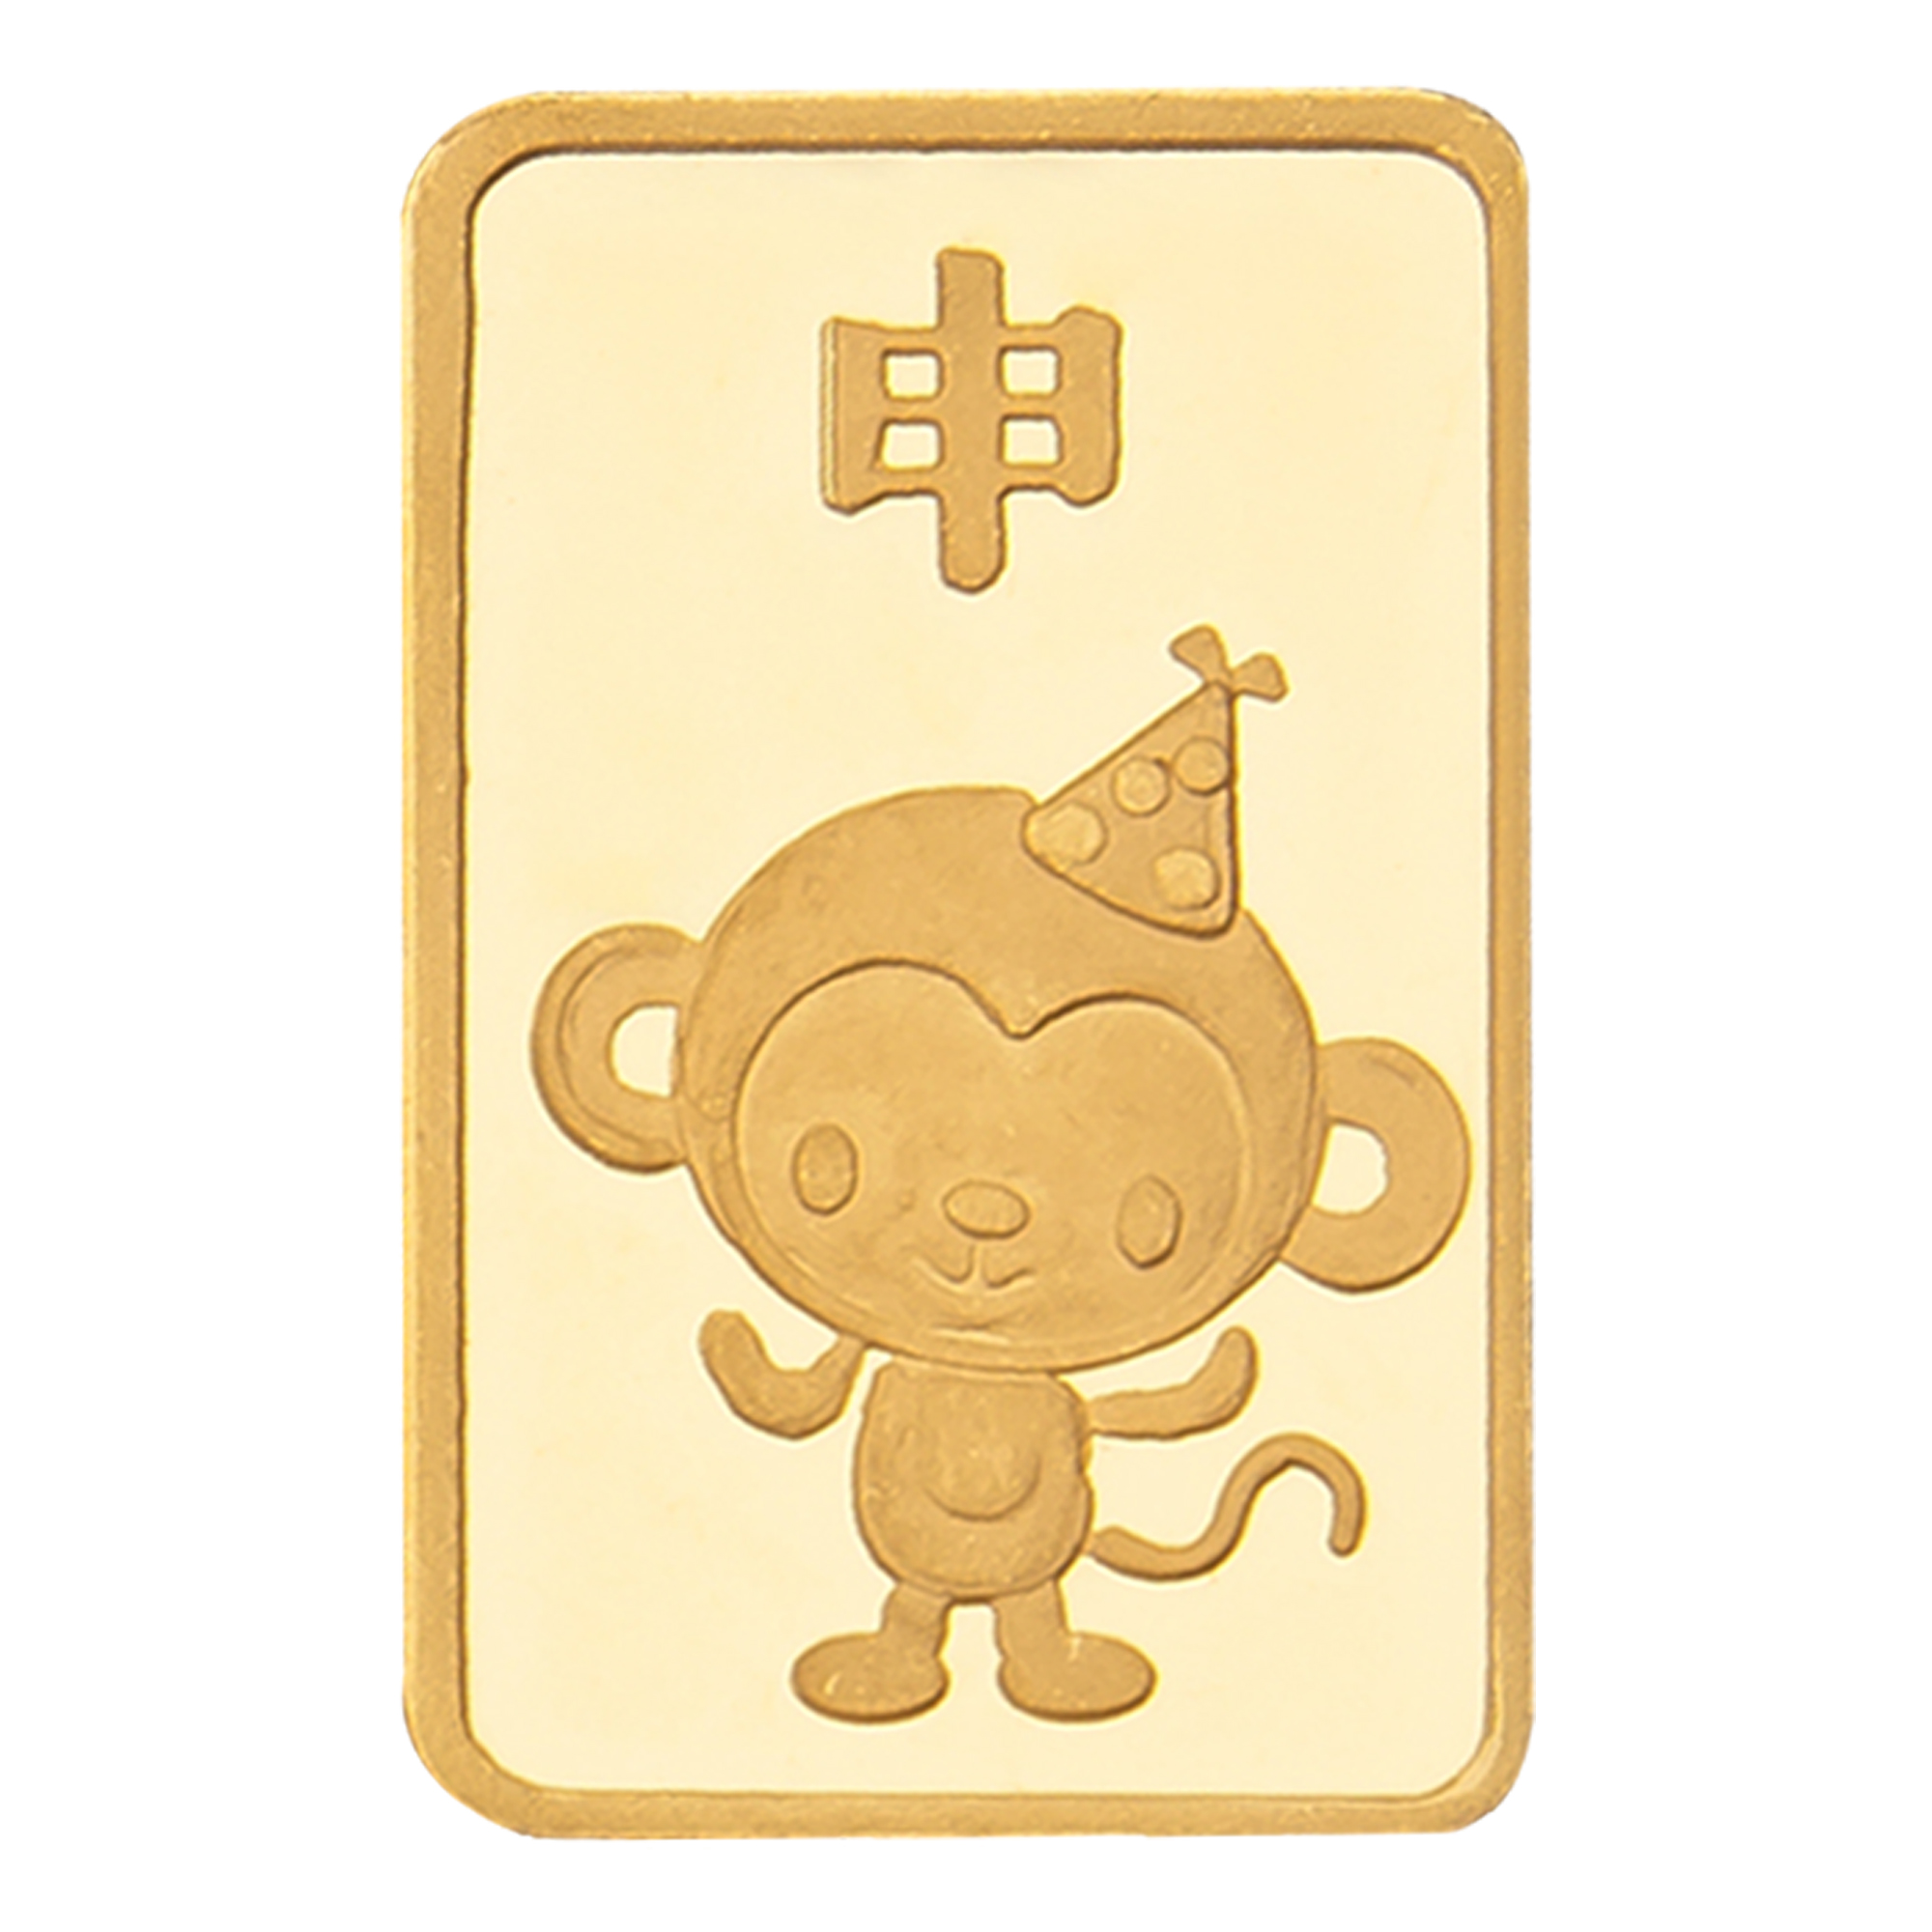 24K 원숭이띠 카드형 골드바(3.75g)